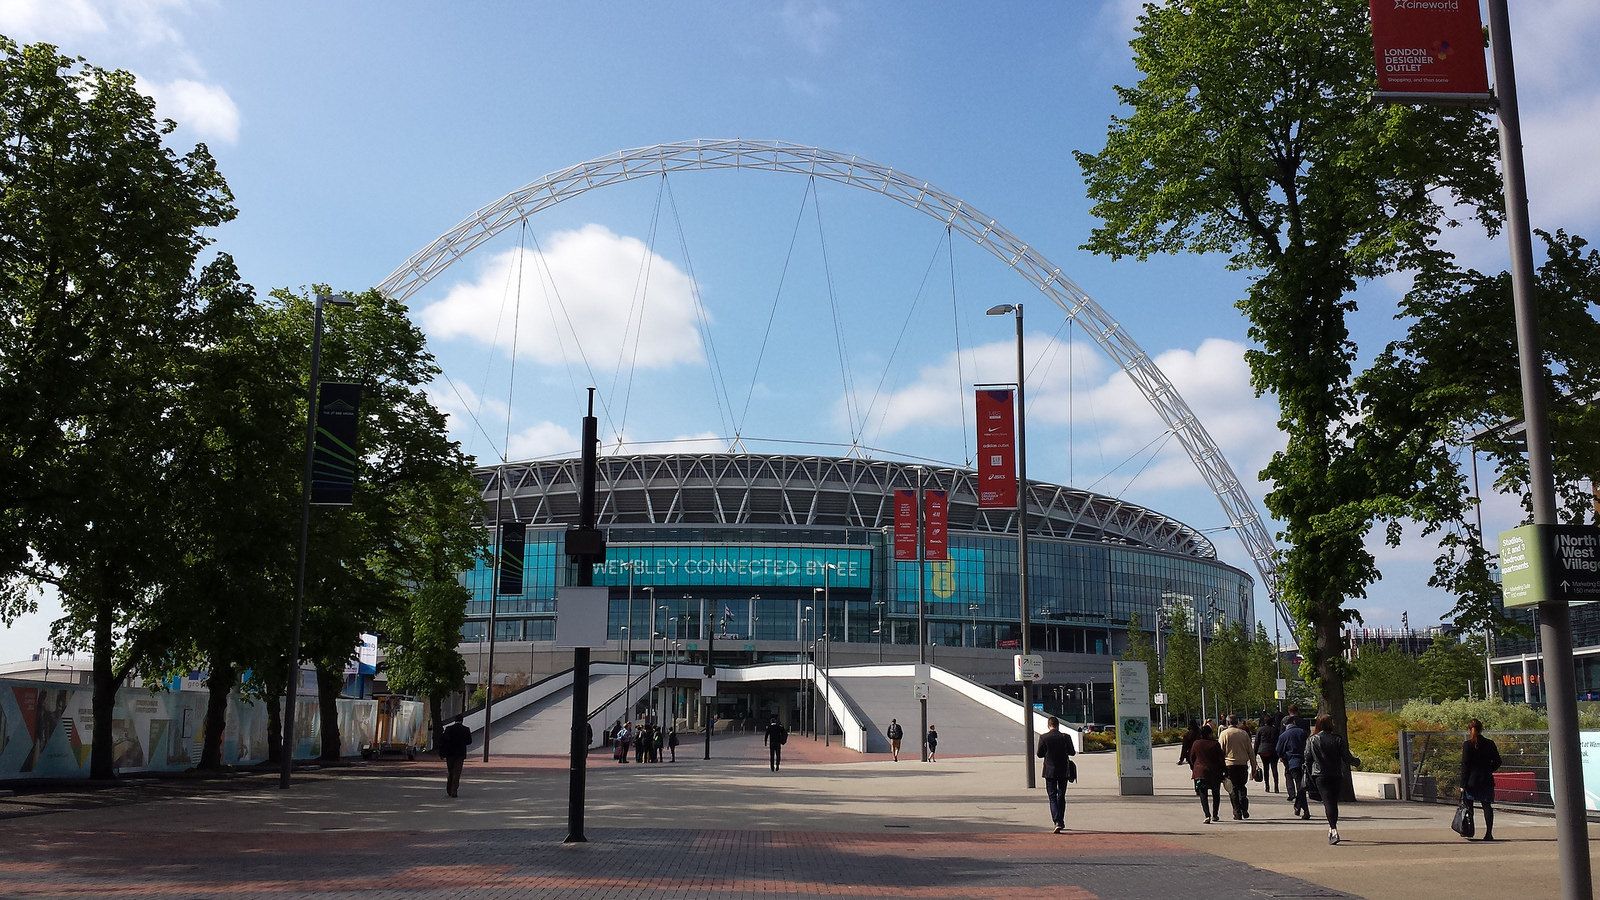 Wembley access